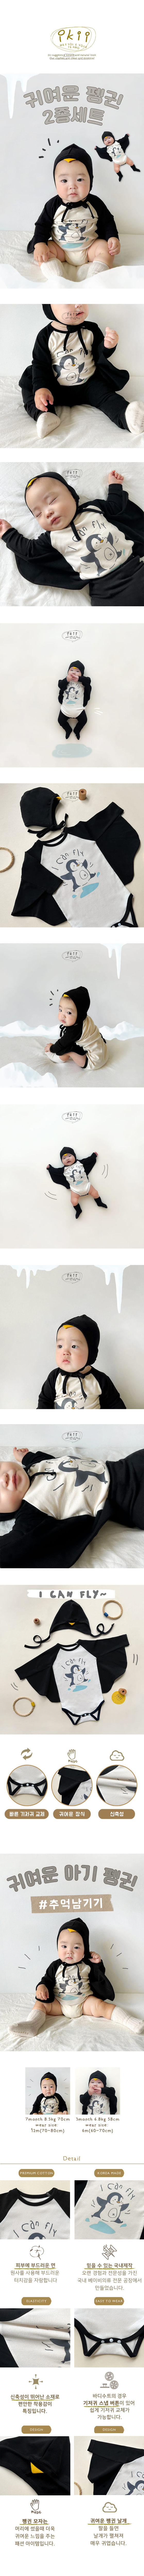 Ikii - Korean Baby Fashion - #babyoutfit - penguin wings 2set